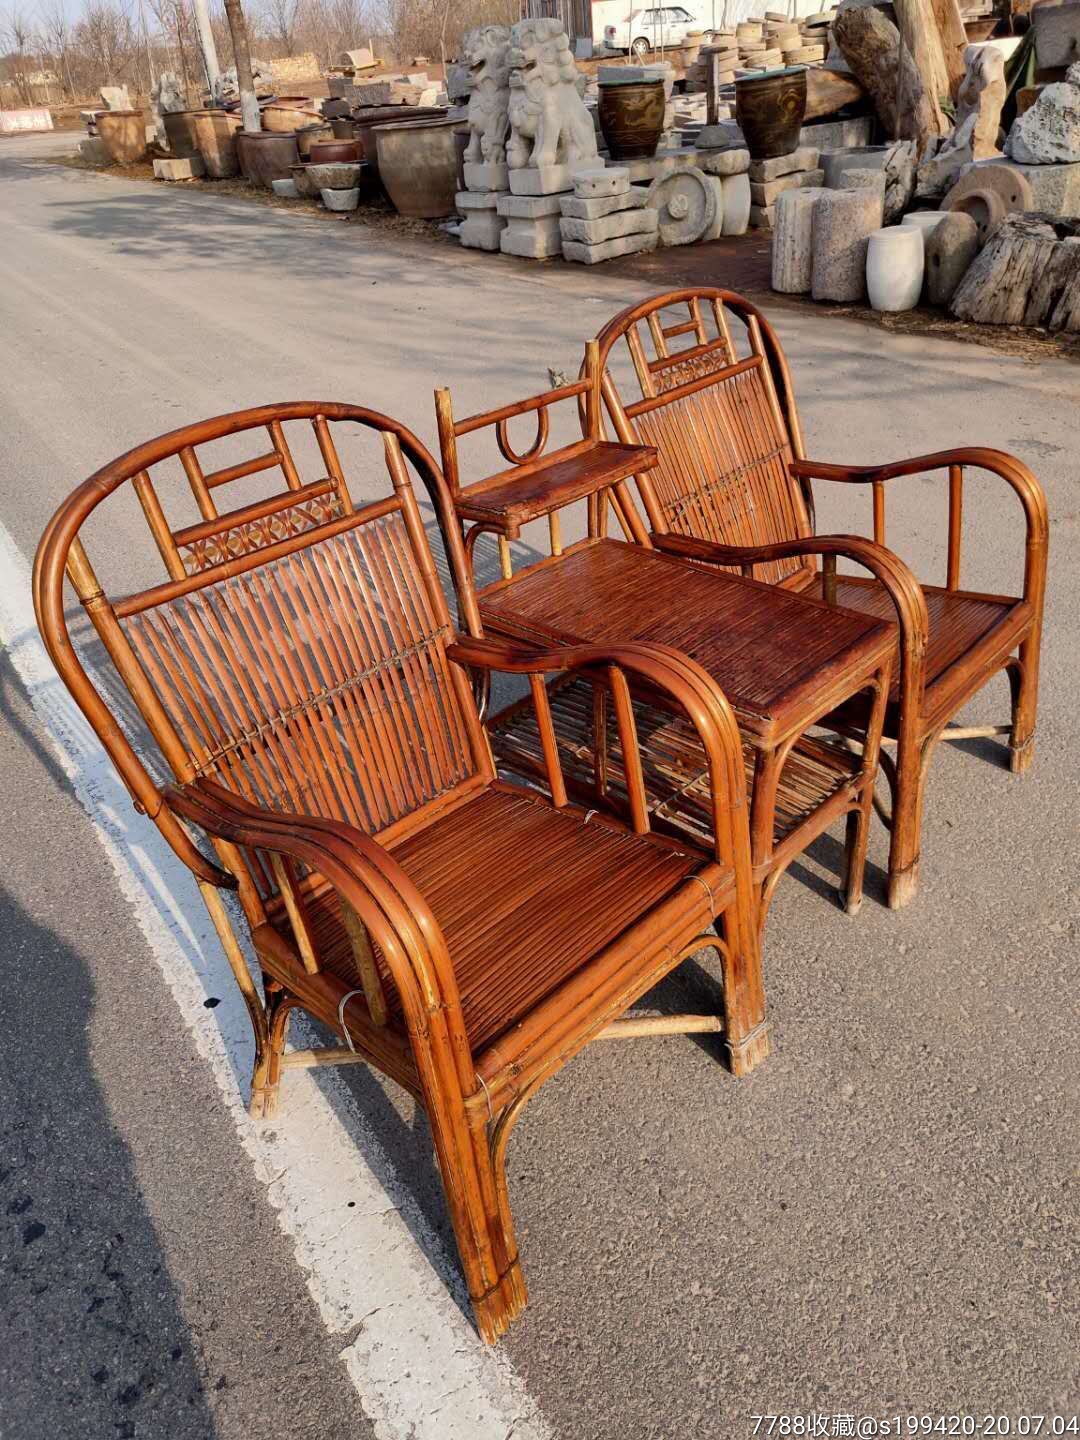 老竹子椅子三件套,完整漂亮,结实耐用,品相如图.700元